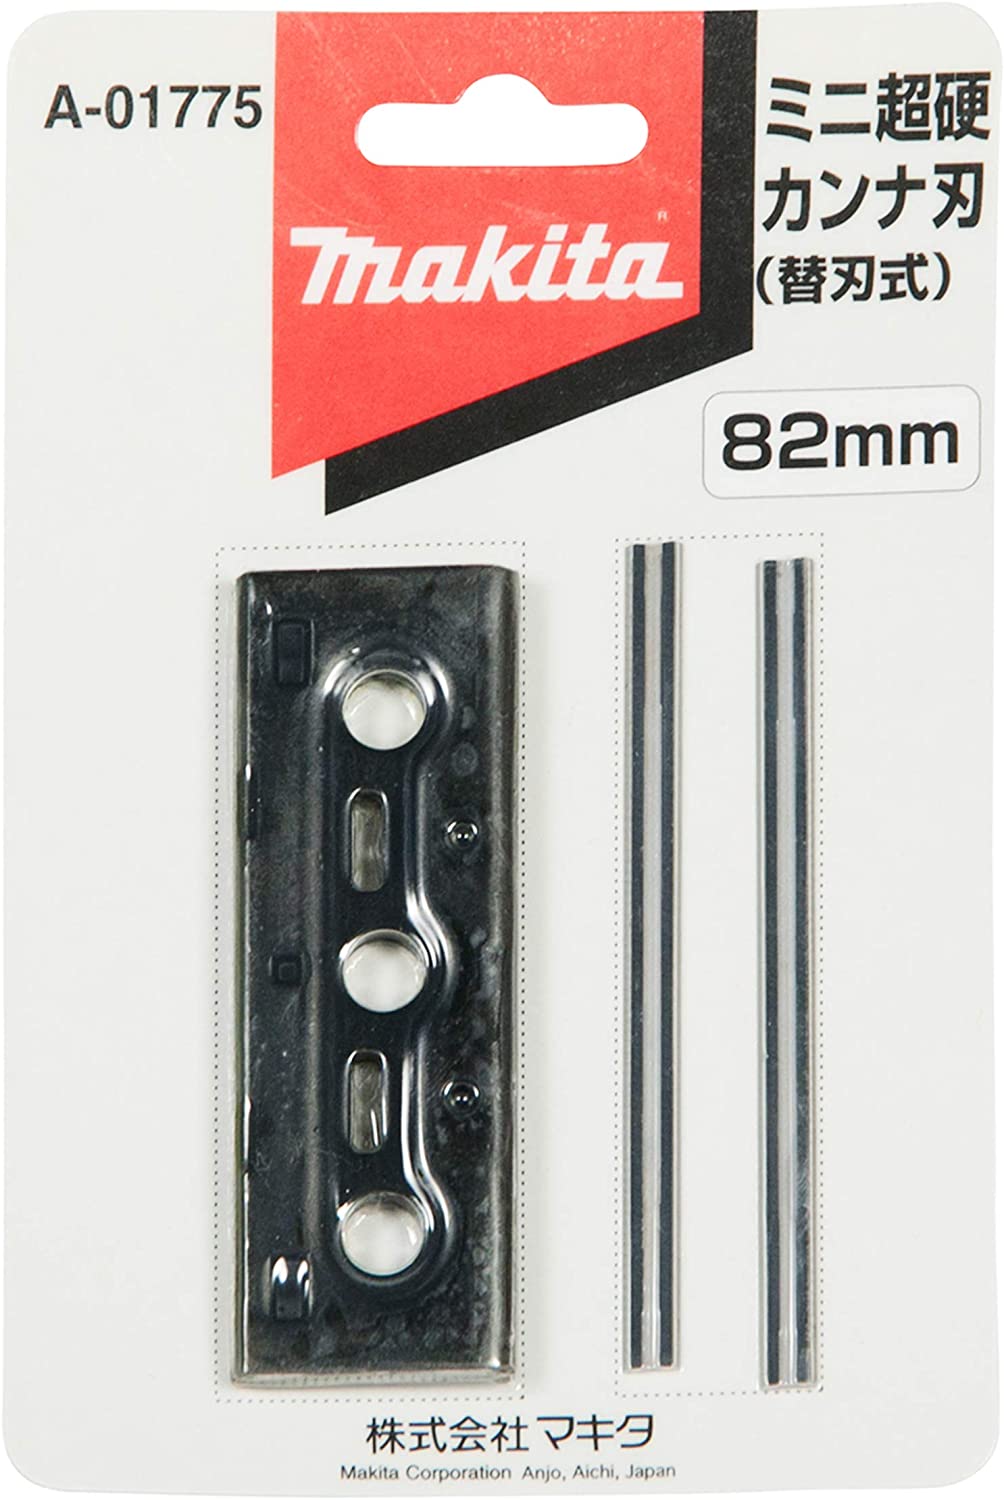 マキタ(makita) ミニ替刃式超硬カンナ刃 セット品 82mm A-01775 高橋本社 